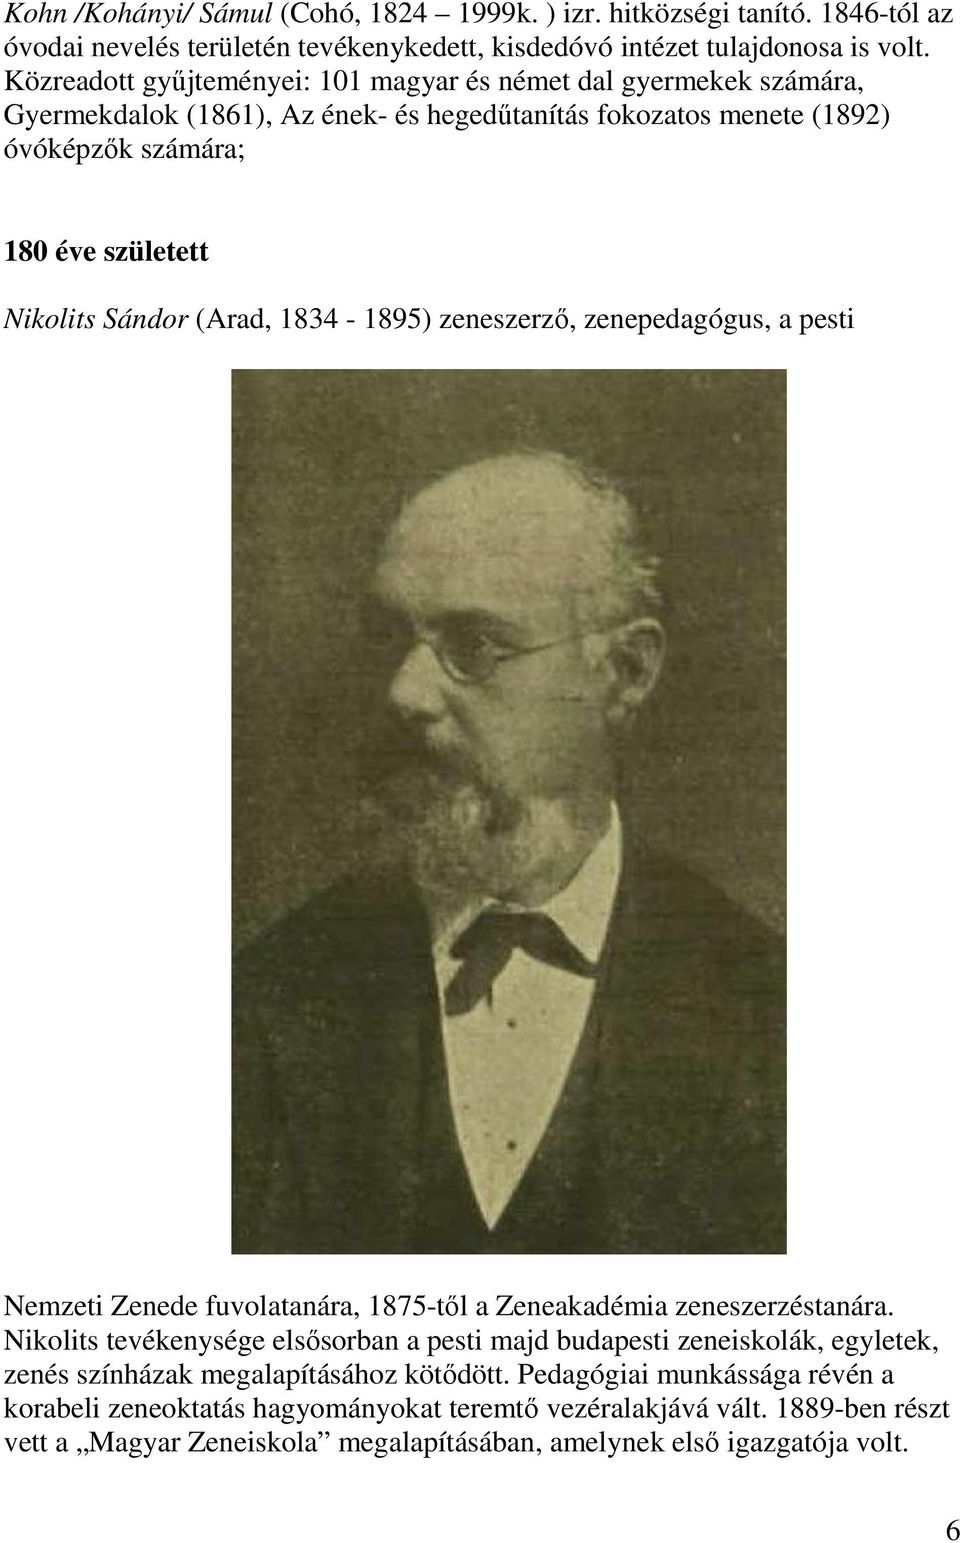 (Arad, 1834-1895) zeneszerző, zenepedagógus, a pesti Nemzeti Zenede fuvolatanára, 1875-től a Zeneakadémia zeneszerzéstanára.